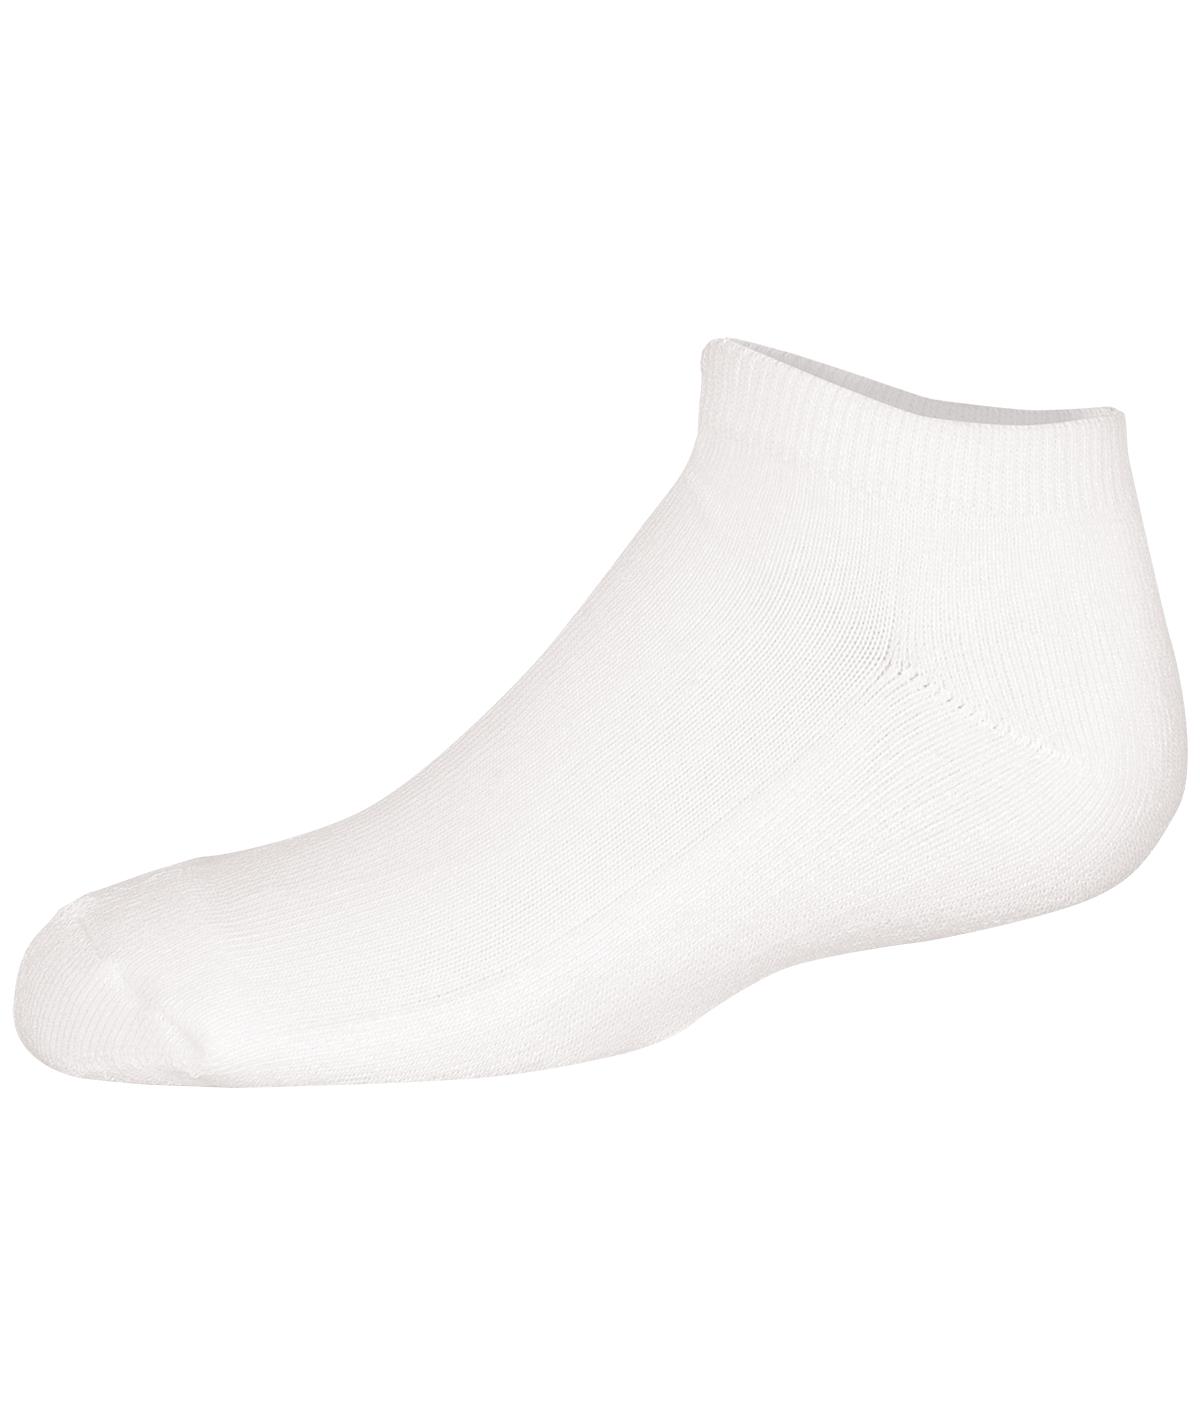 Chasse White Anklet Sock - Cheer Socks | Omni Cheer